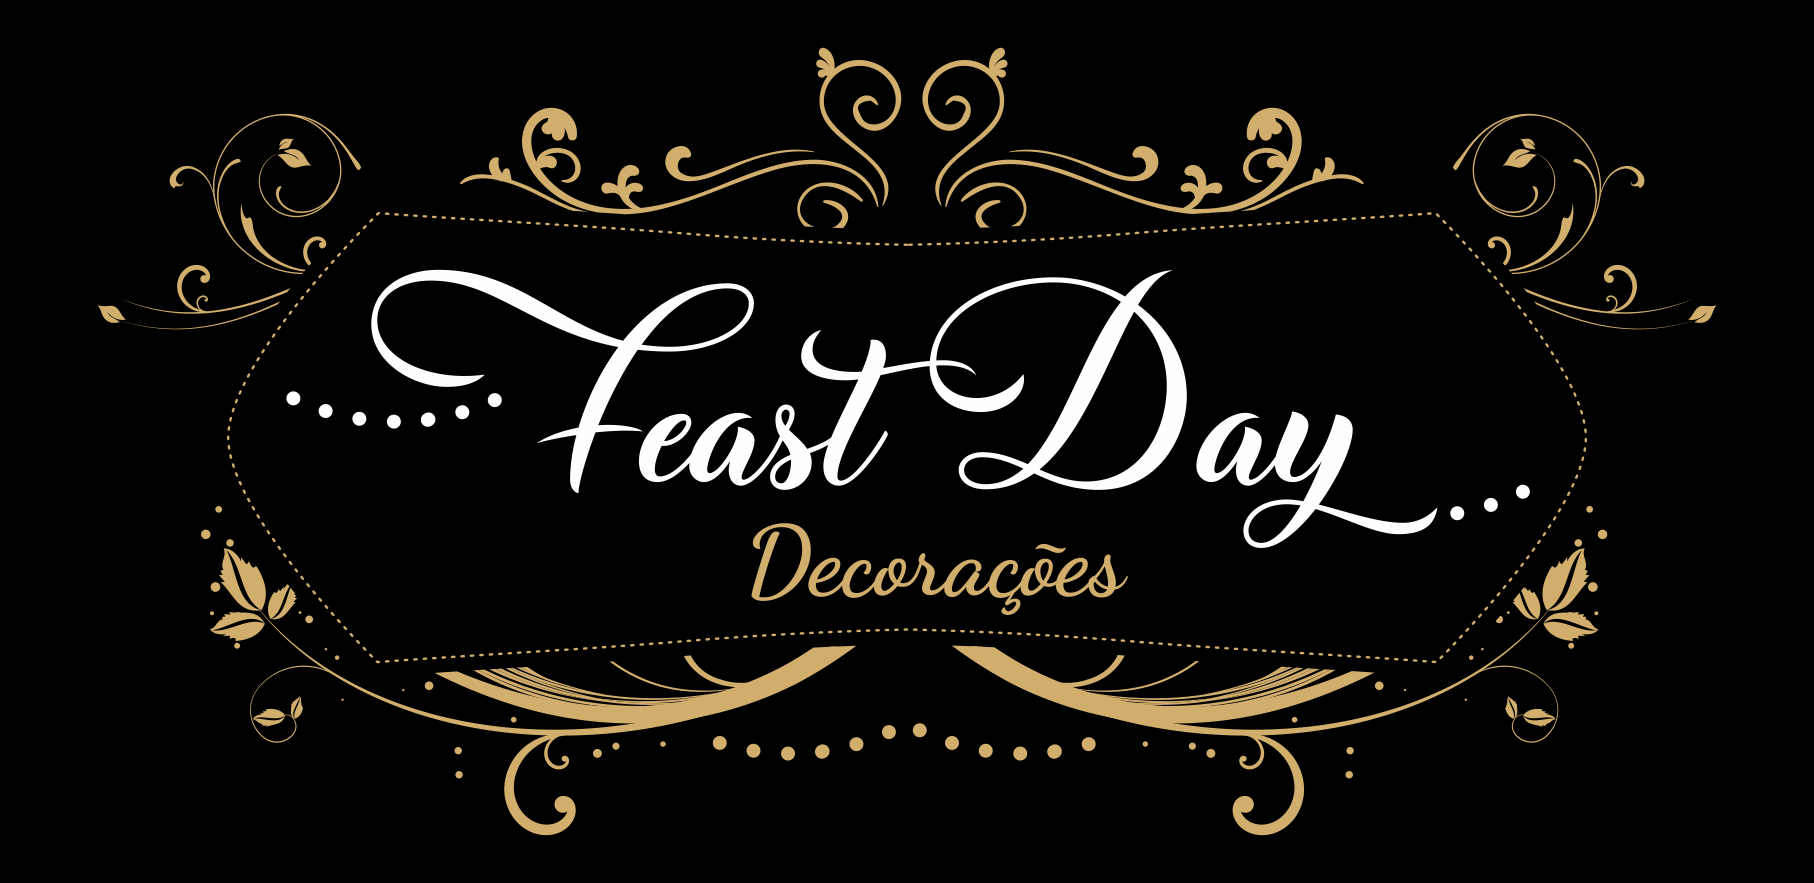 Feast Day Decorações